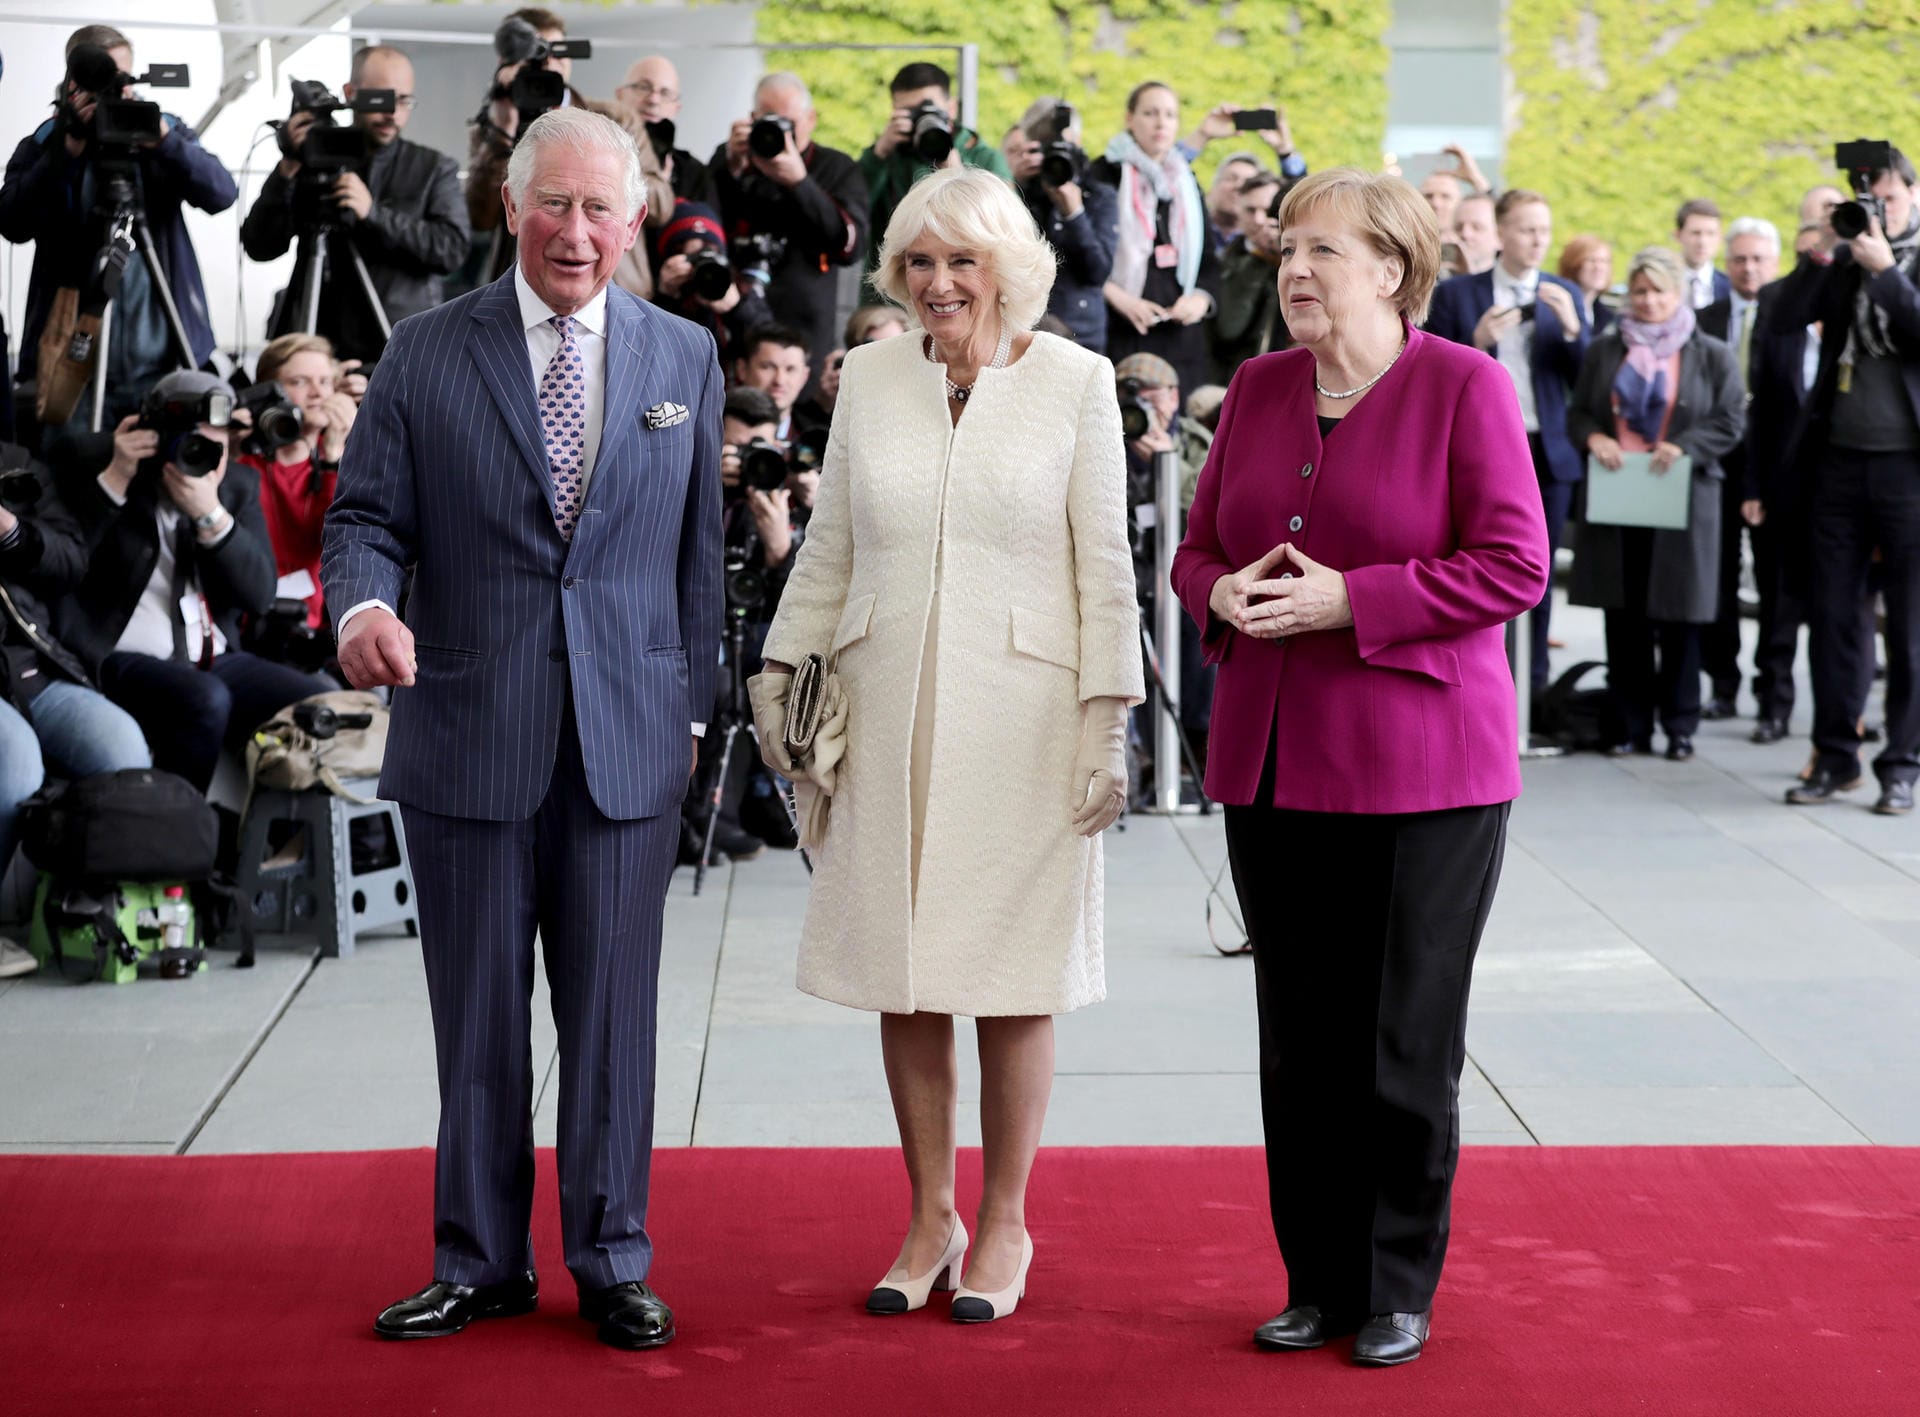 Das Medieninteresse an dem Eintreffen von Prinz Charles und Camilla ist groß.